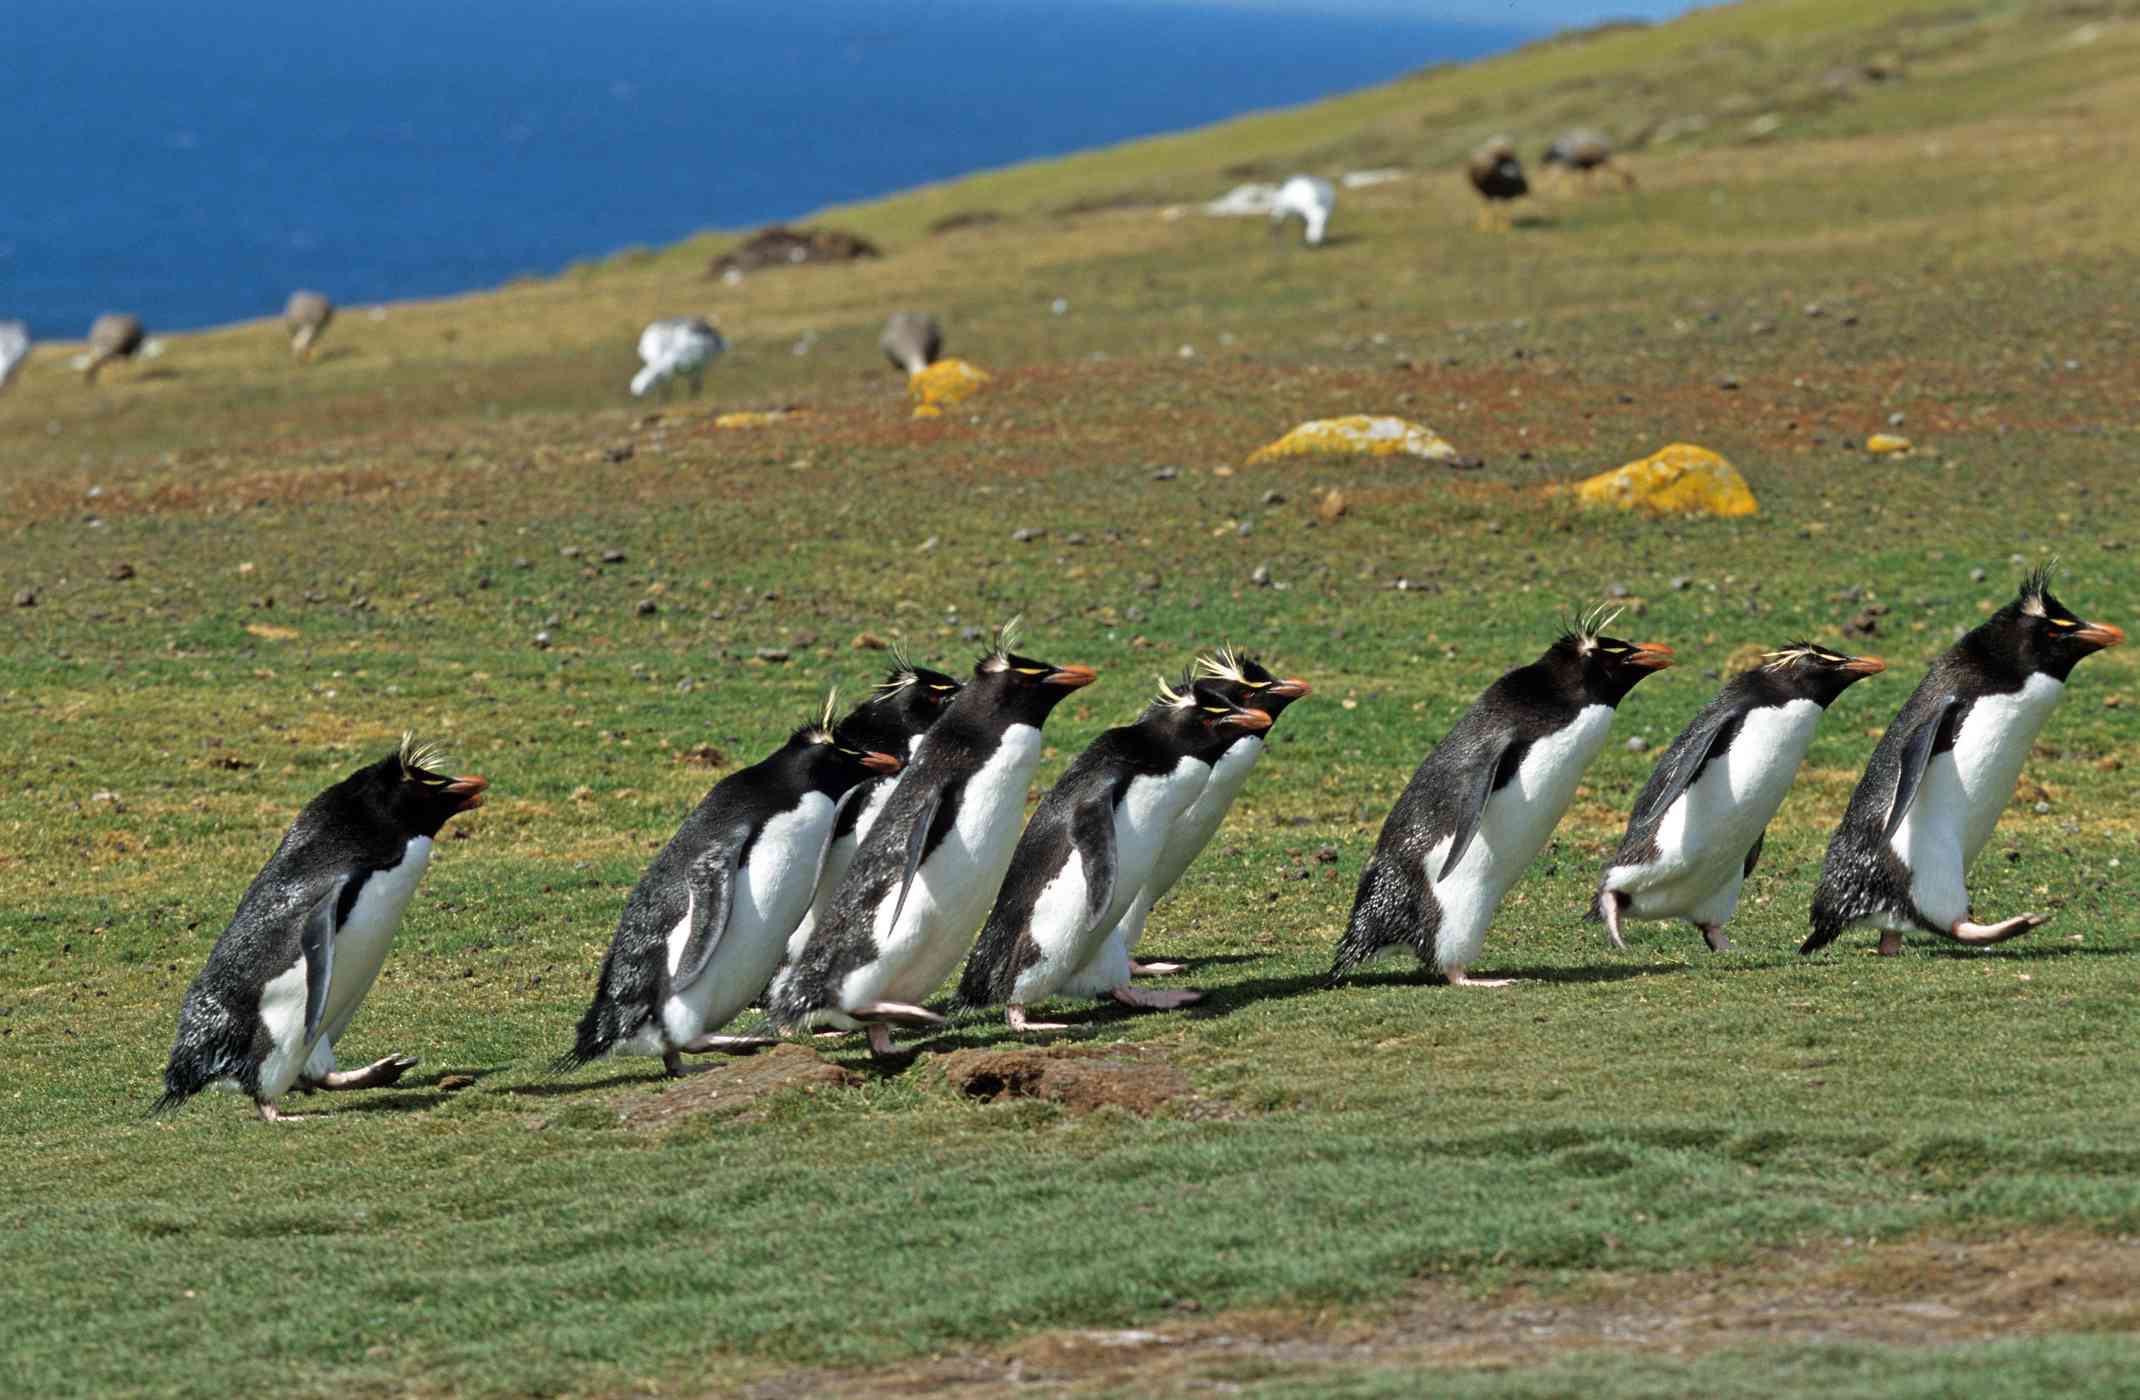 一群冠企鹅横跨草皮景观“width=